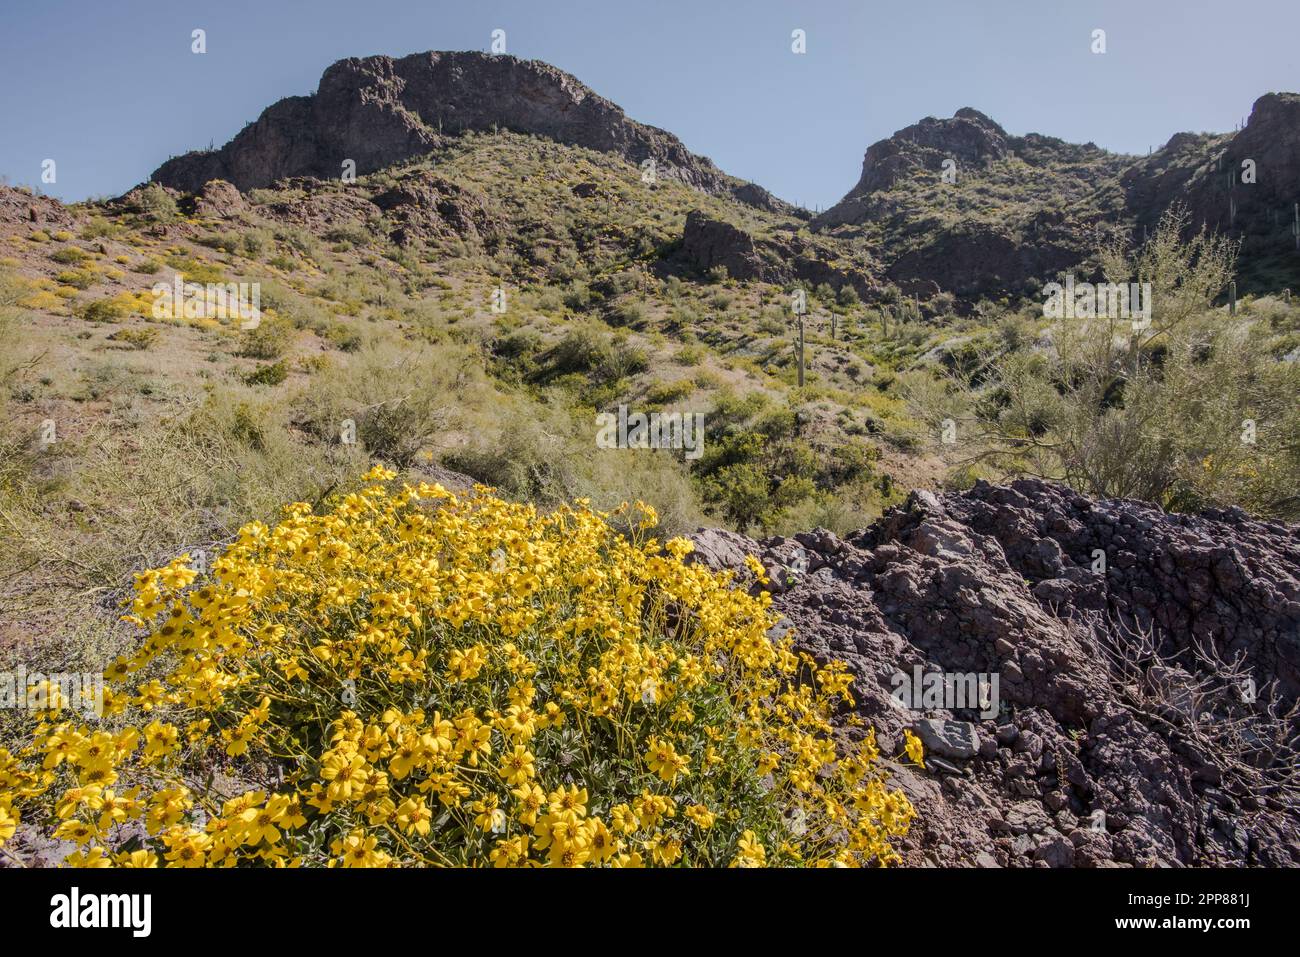 Fleurs sauvages et cactus saguaro au printemps au parc national de Picacho Peak, désert de Sonoran, Picacho, Arizona, États-Unis Banque D'Images